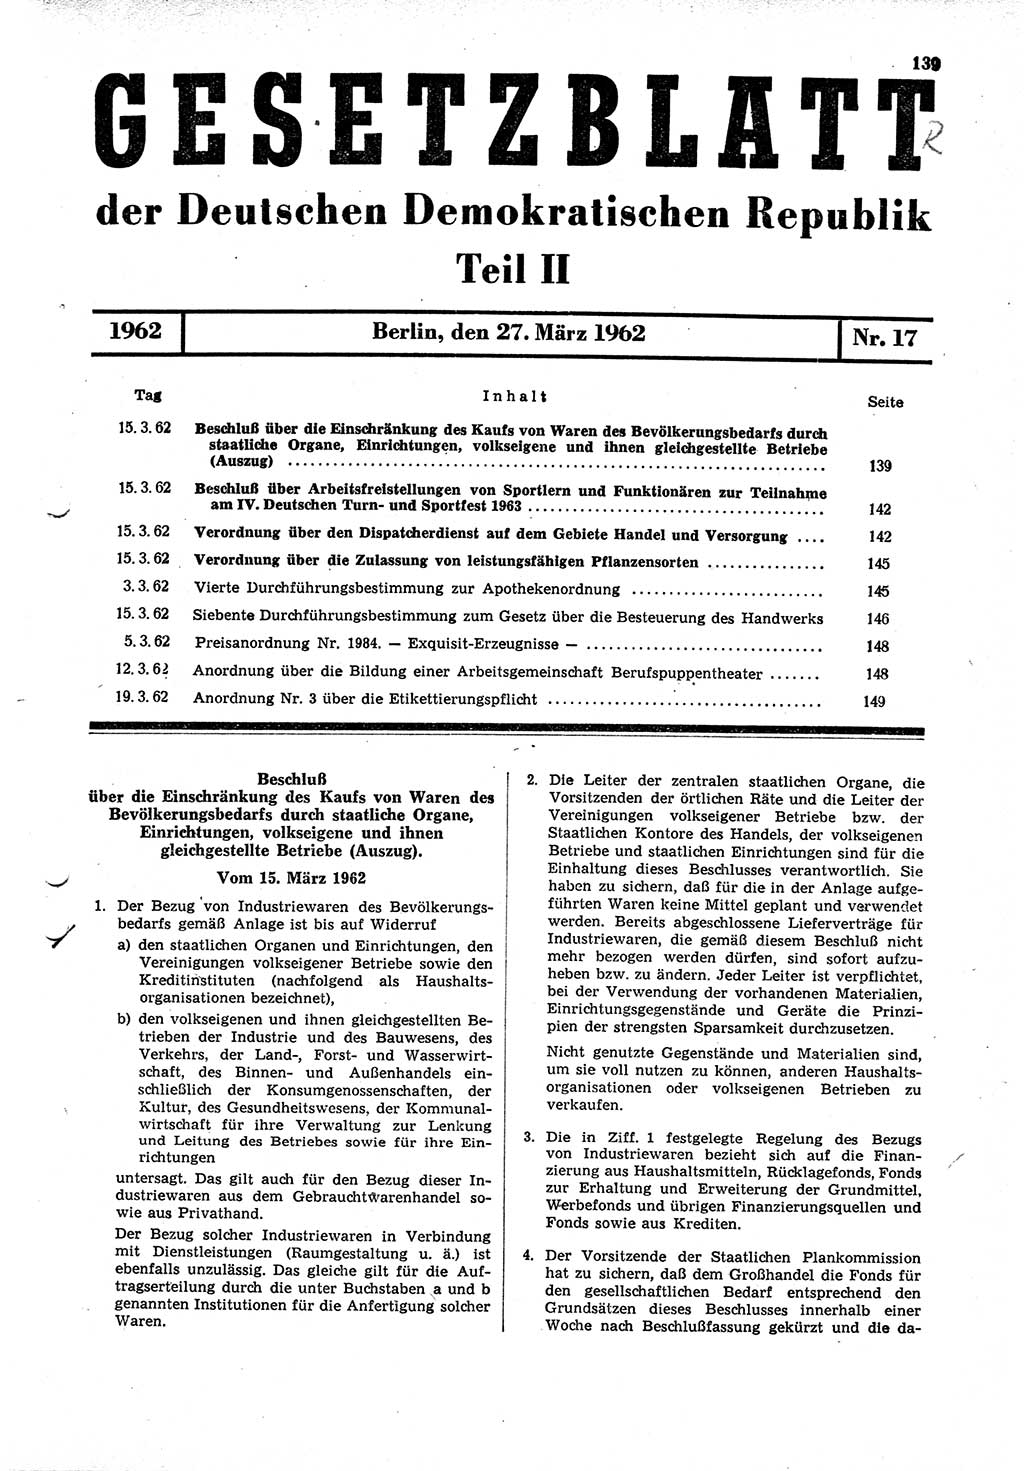 Gesetzblatt (GBl.) der Deutschen Demokratischen Republik (DDR) Teil ⅠⅠ 1962, Seite 139 (GBl. DDR ⅠⅠ 1962, S. 139)